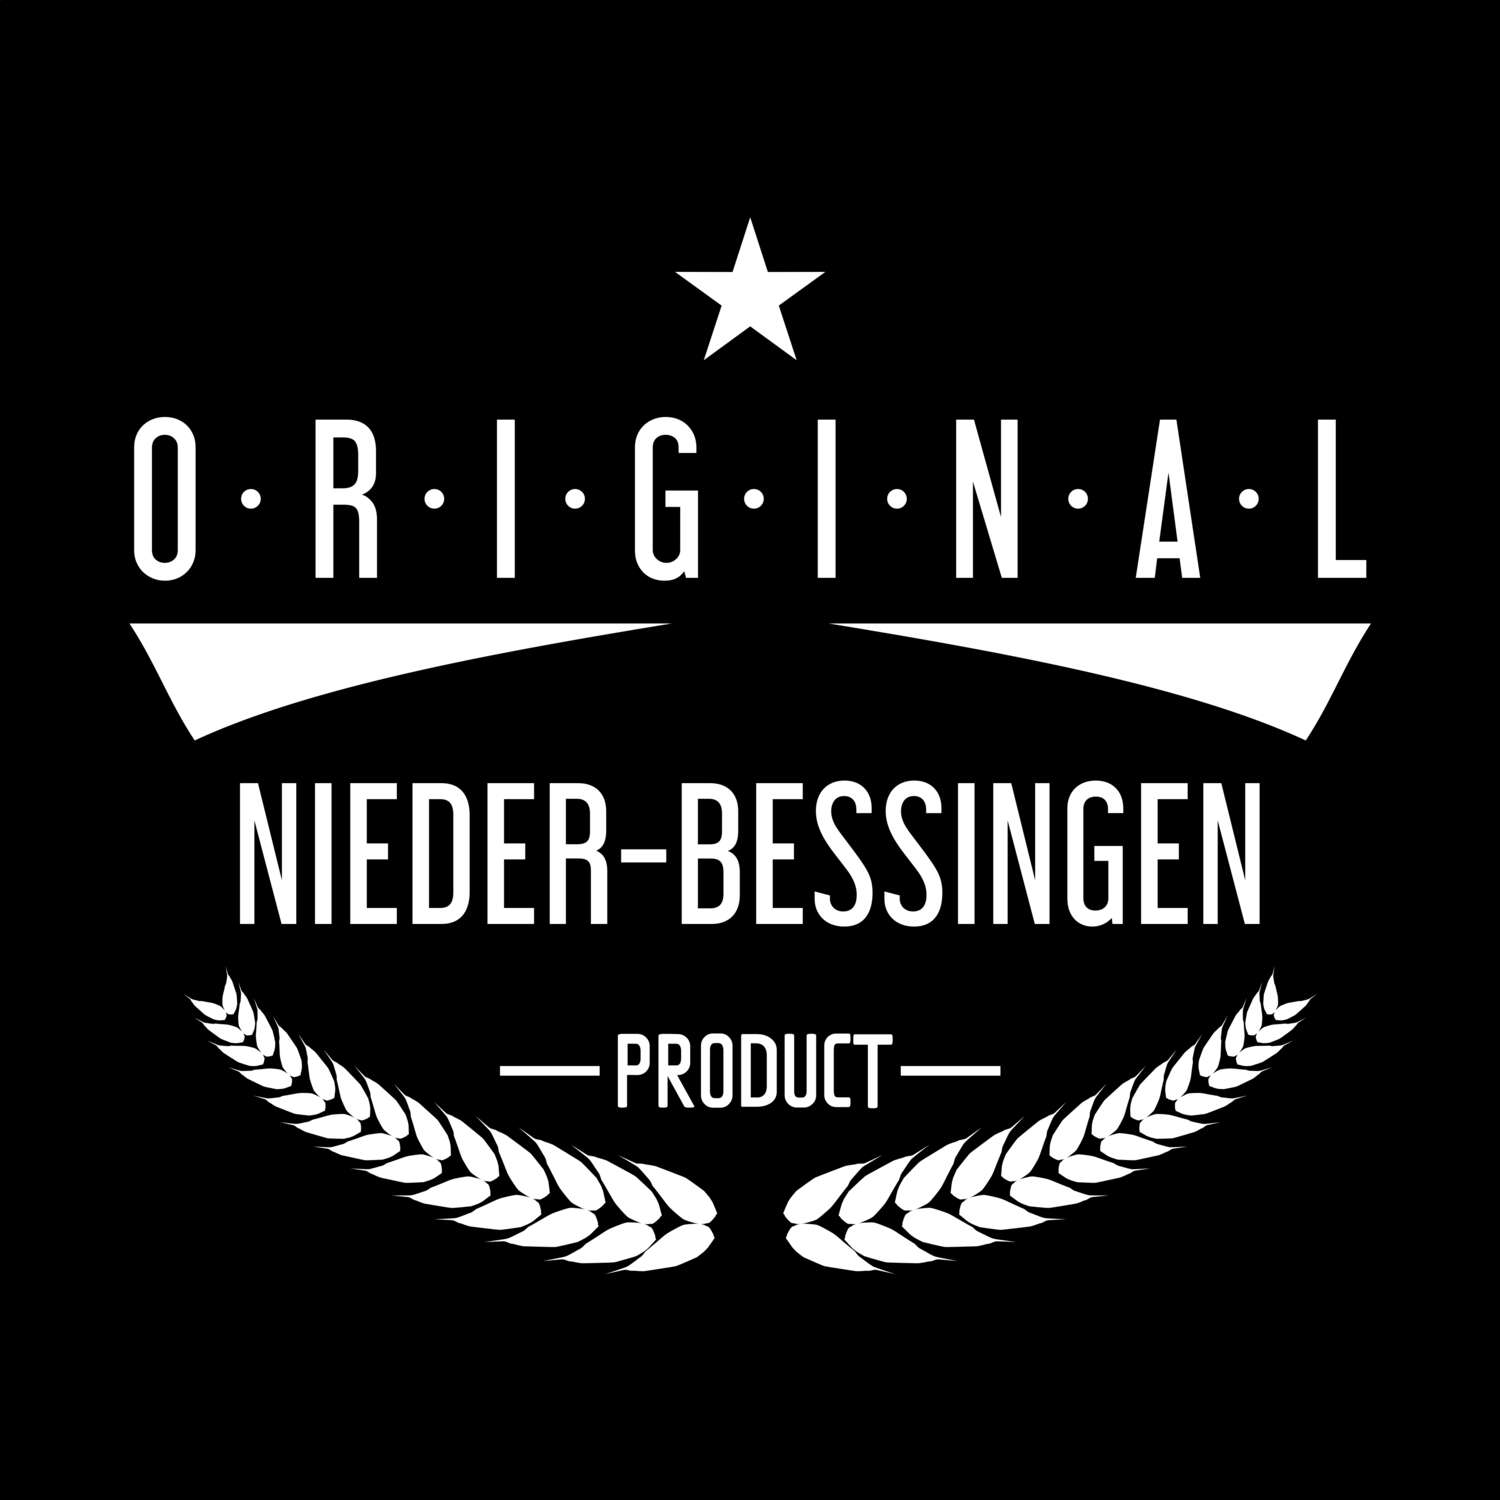 Nieder-Bessingen T-Shirt »Original Product«